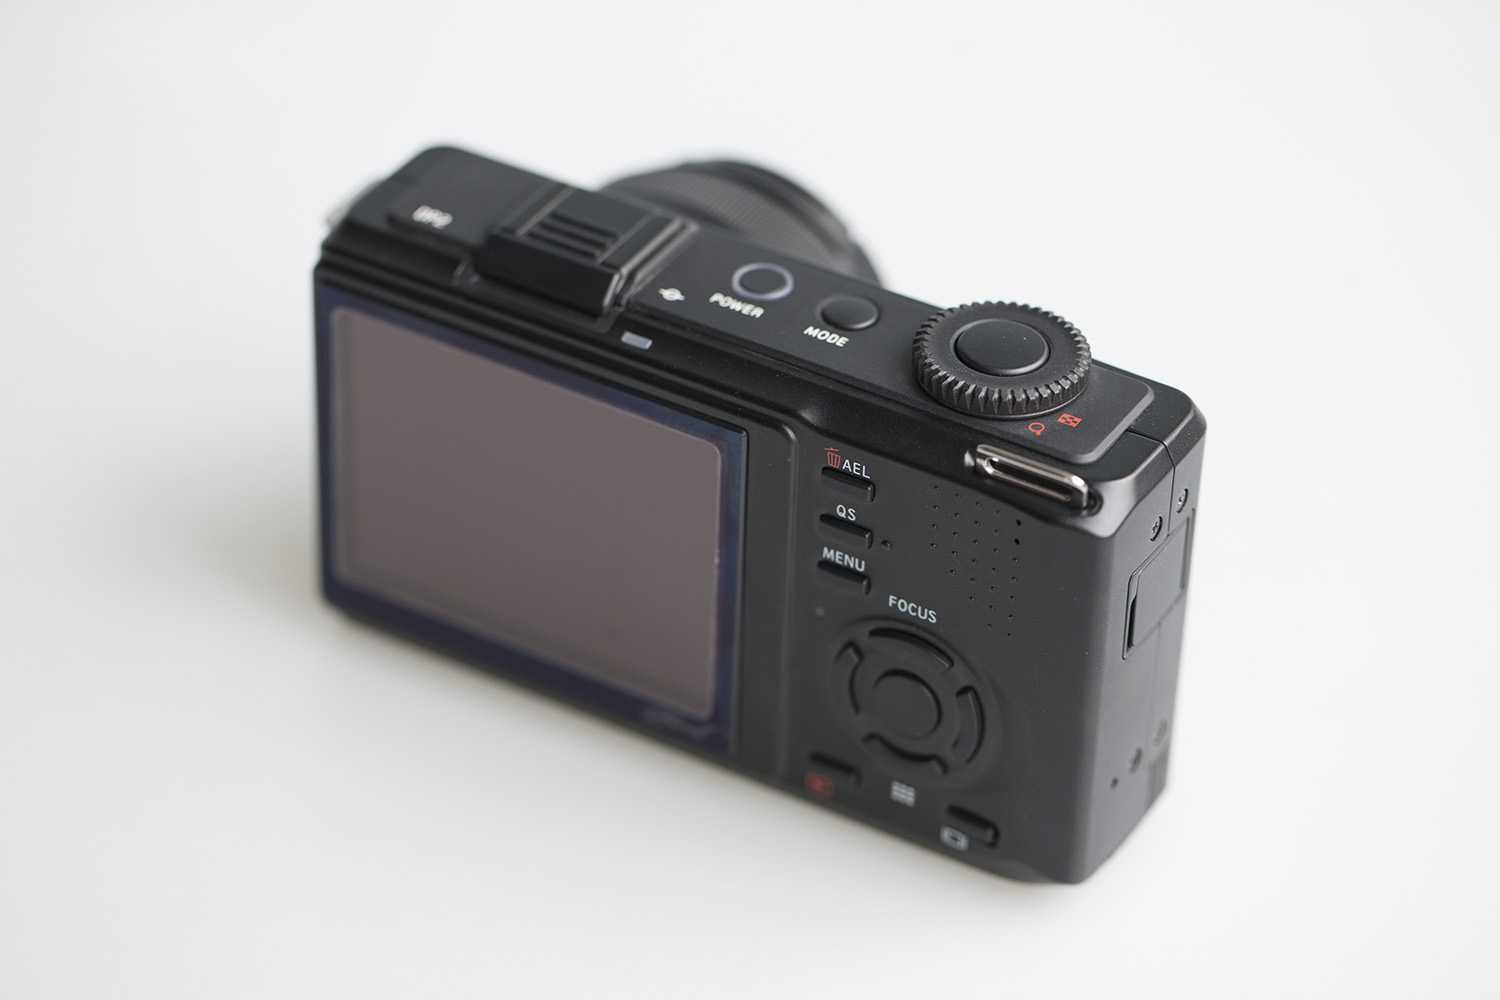 Sigma dp2 merrill - купить  в санкт-петербург, скидки, цена, отзывы, обзор, характеристики - фотоаппараты цифровые